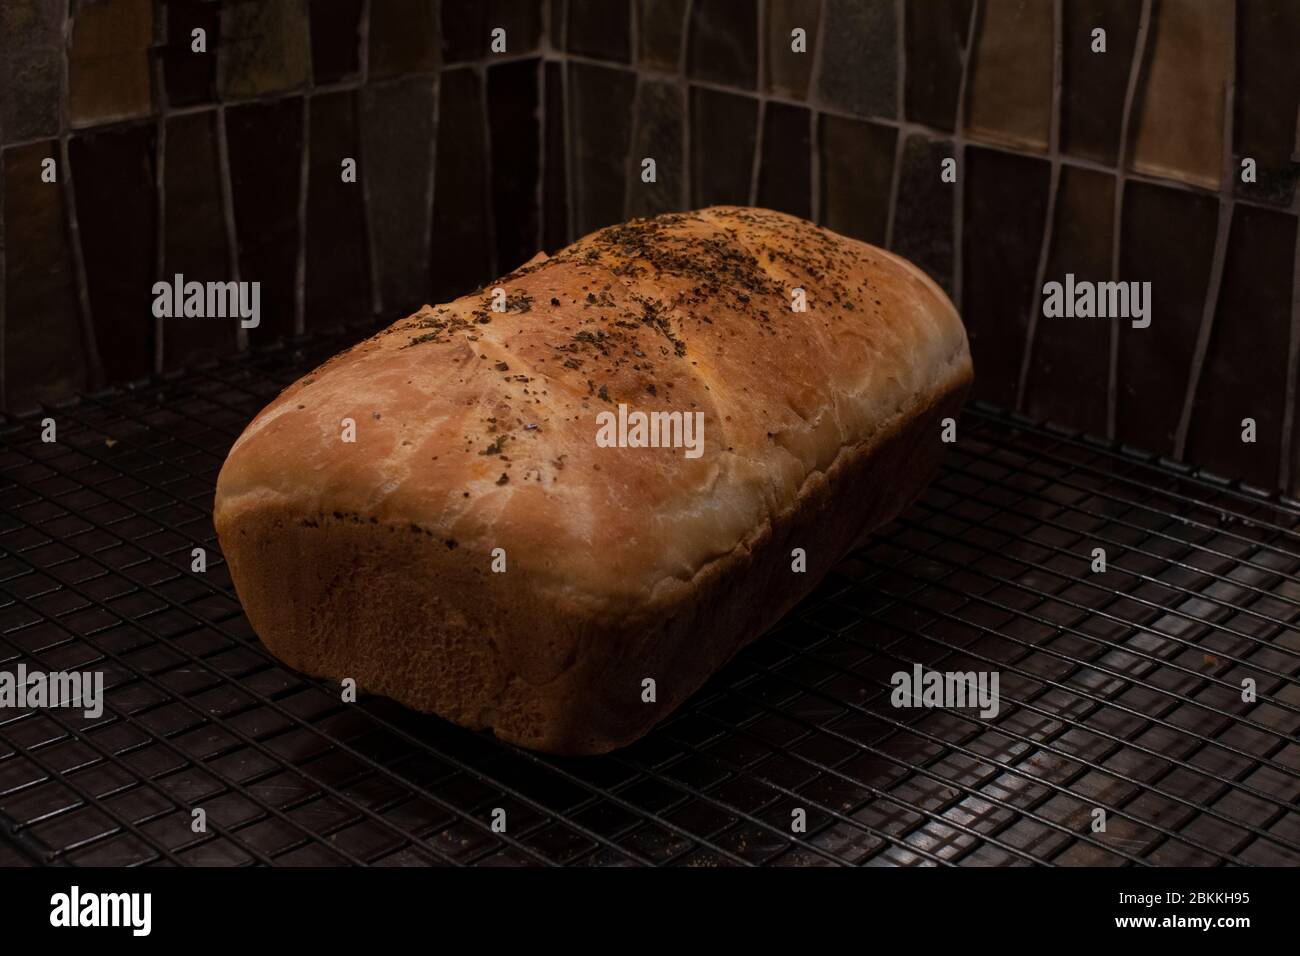 Ein Laib voll gekrächeltem Brot, perfekt gebacken und auf einem Drahtseil gekühlt. Moody und dunkle Farben Stockfoto